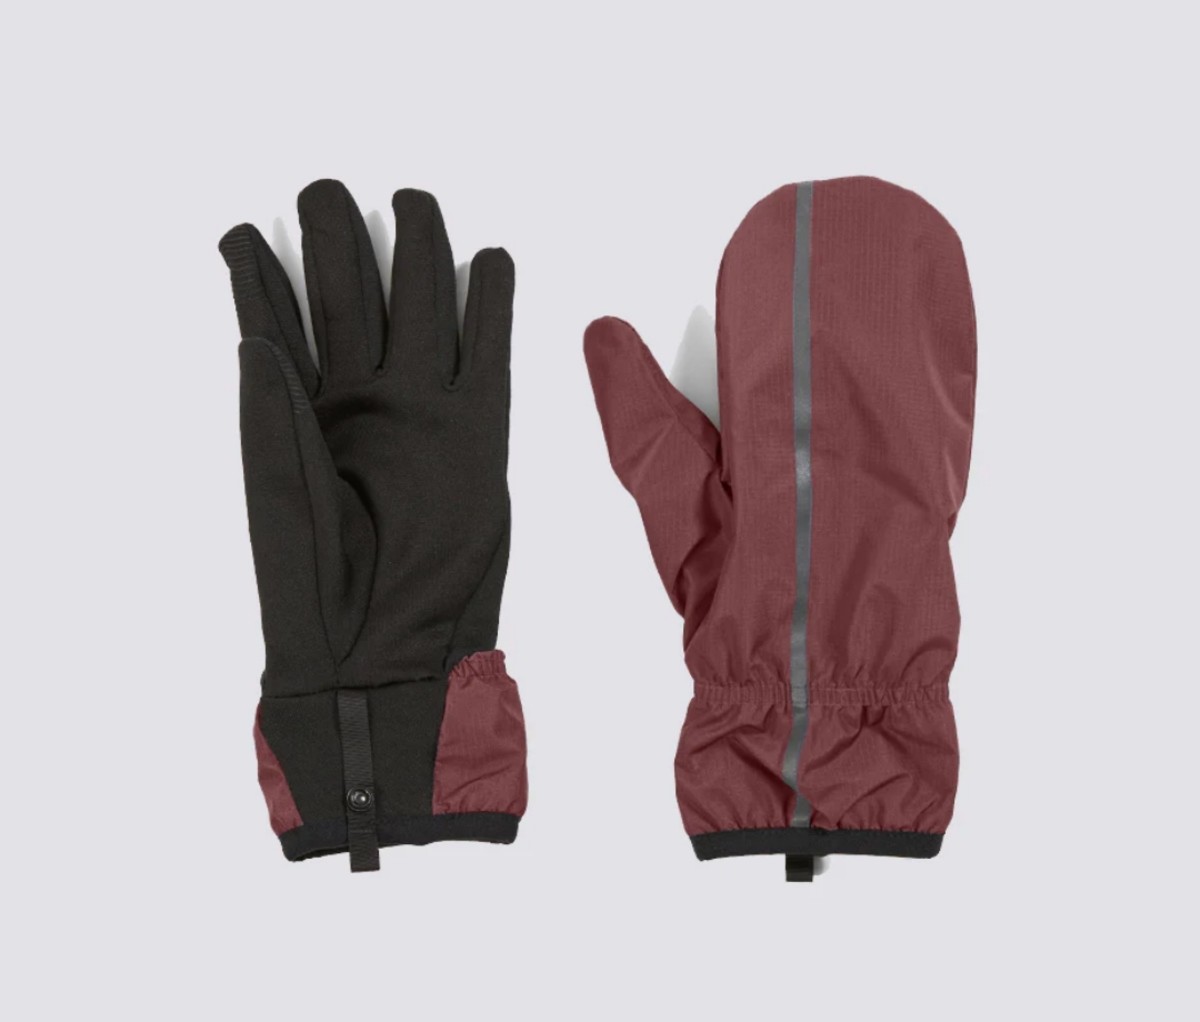 11 winter running gear essentials - Men's Journal